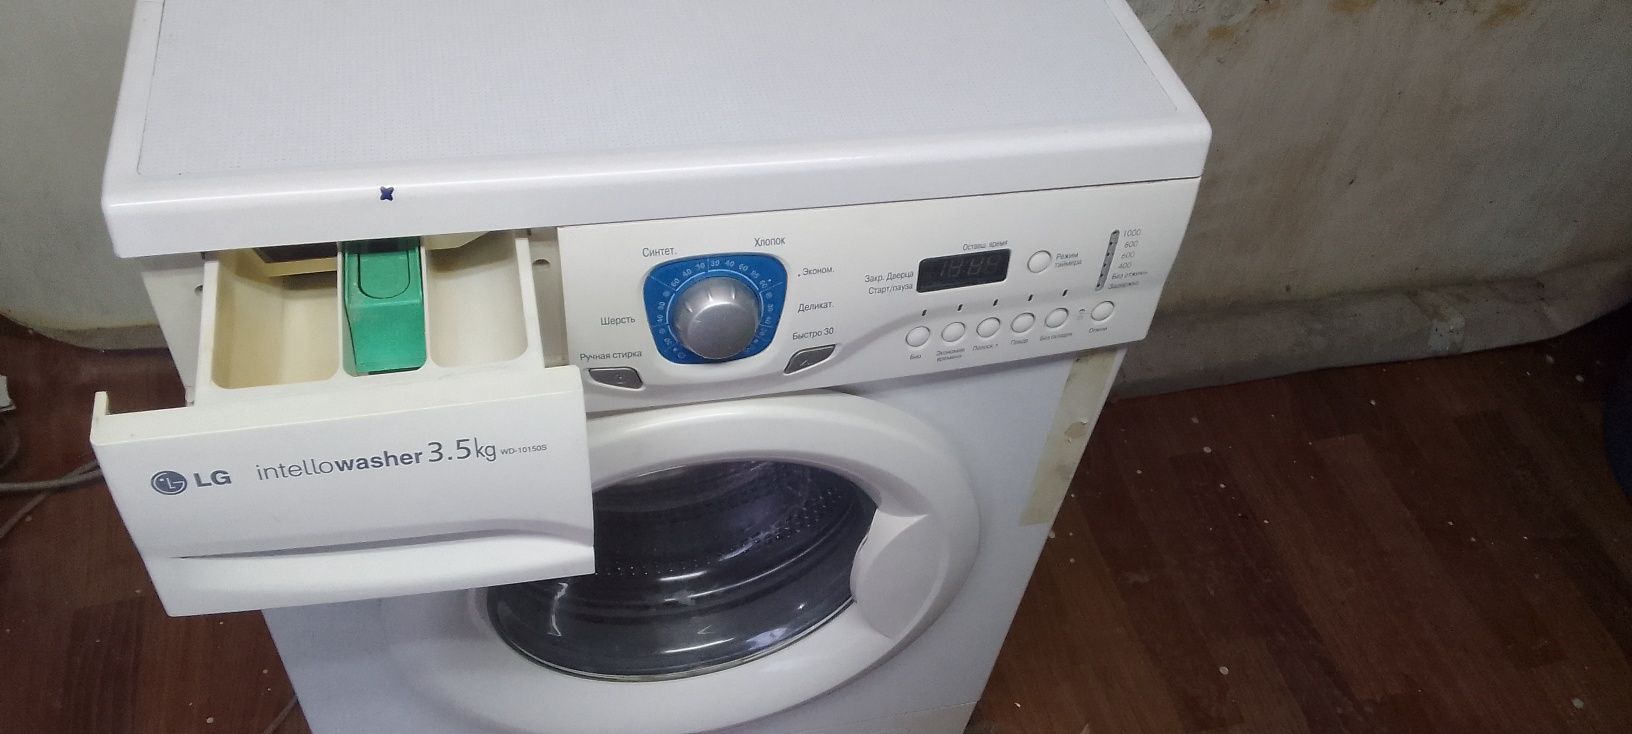 Продам стиральную машину LG - 3.5кг, состояние отличное.